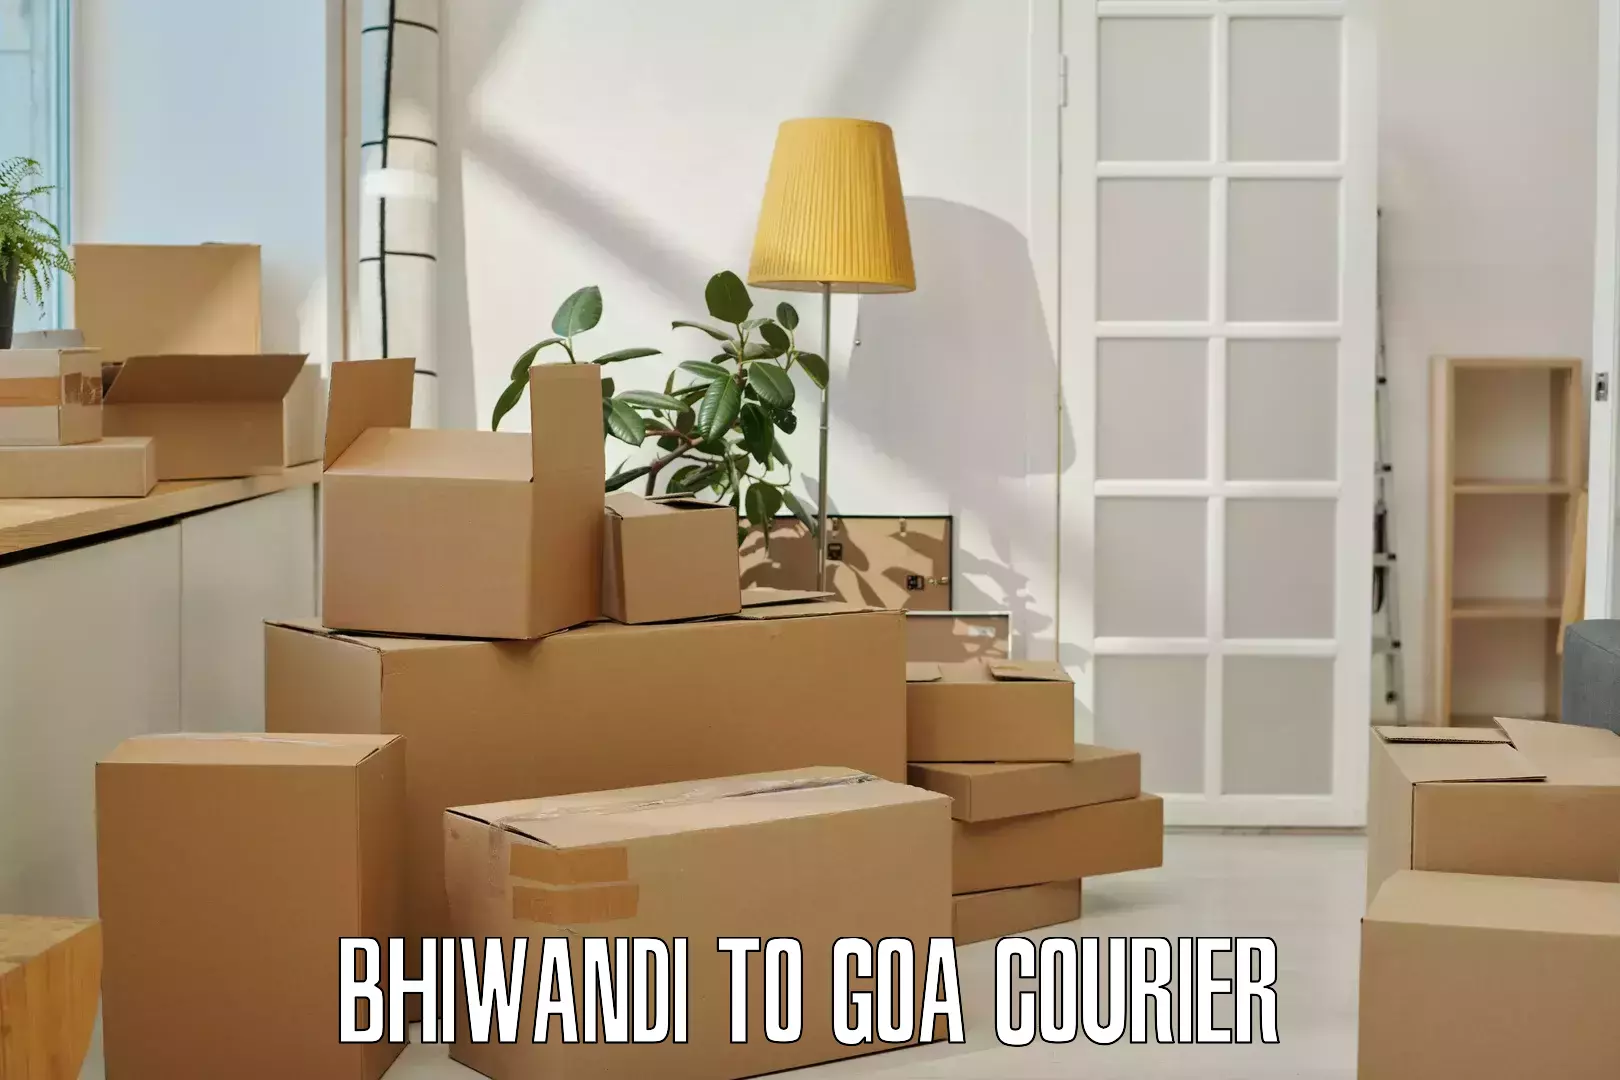 Courier app Bhiwandi to Vasco da Gama